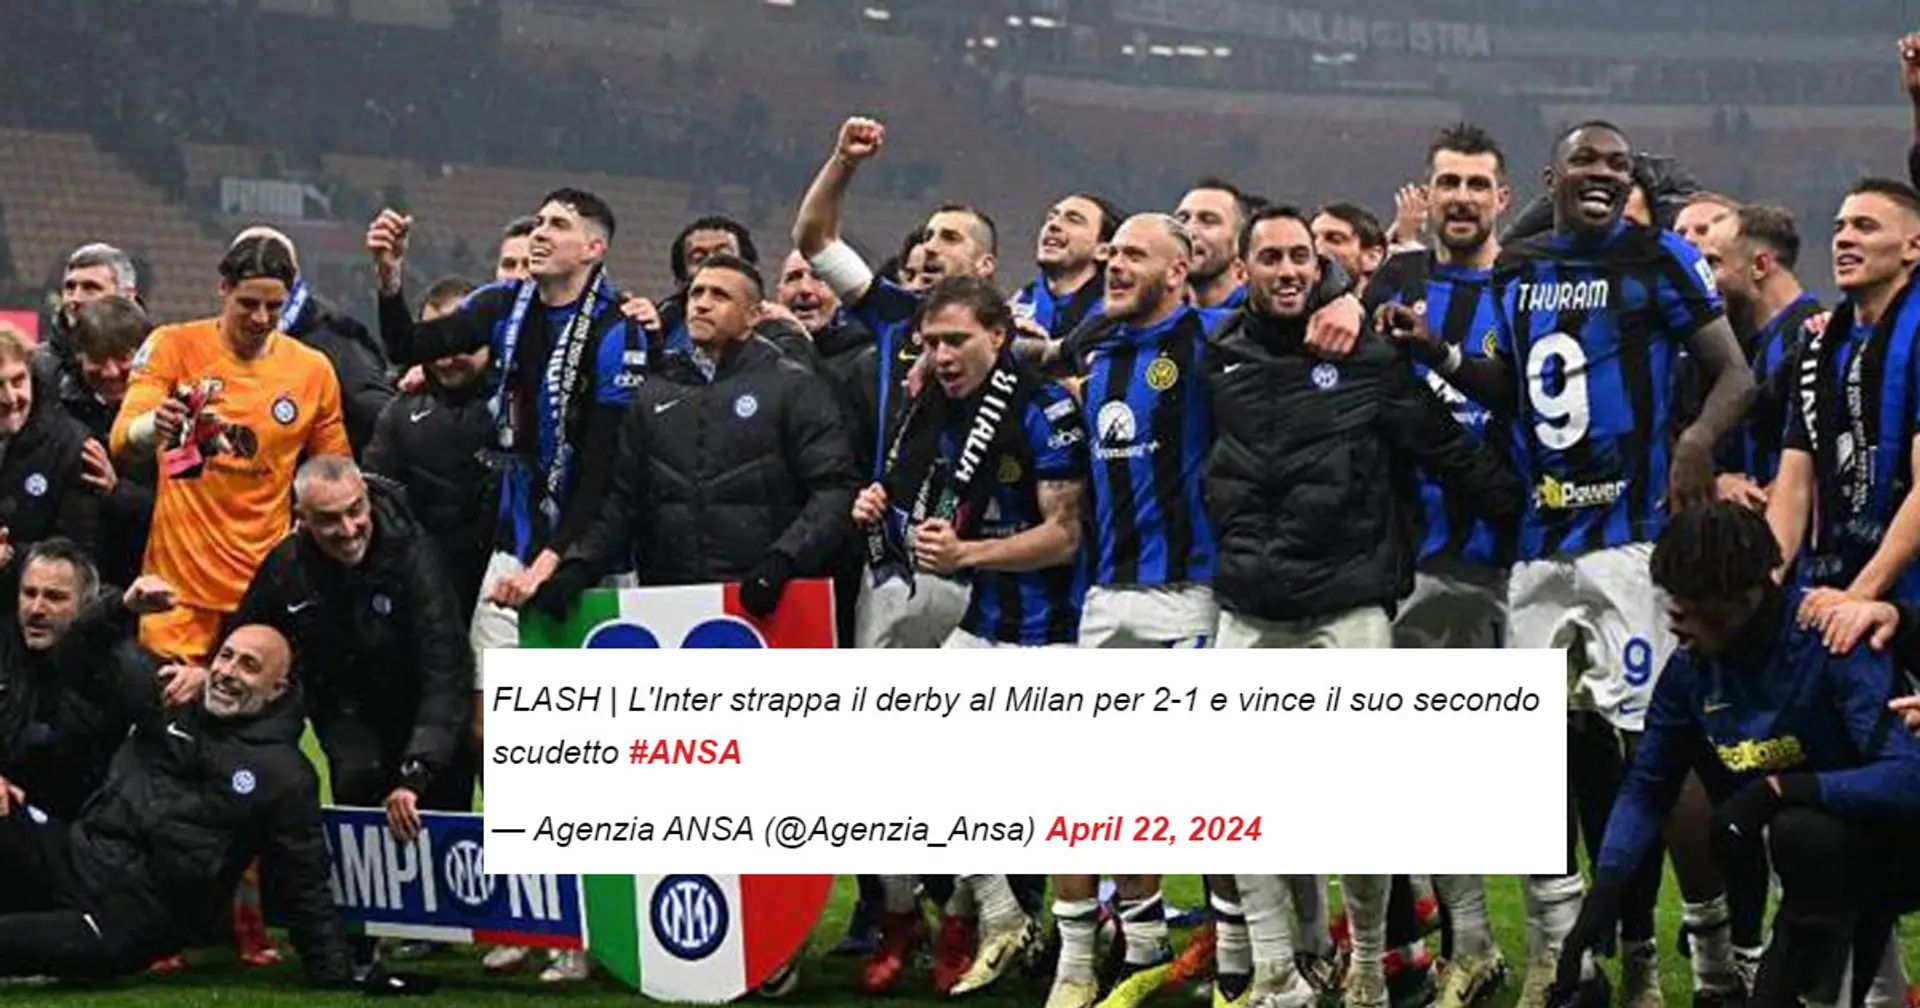 Clamorosa gaffe dell'ANSA: "tolti" 18 Scudetti all'Inter dopo la vittoria nel derby